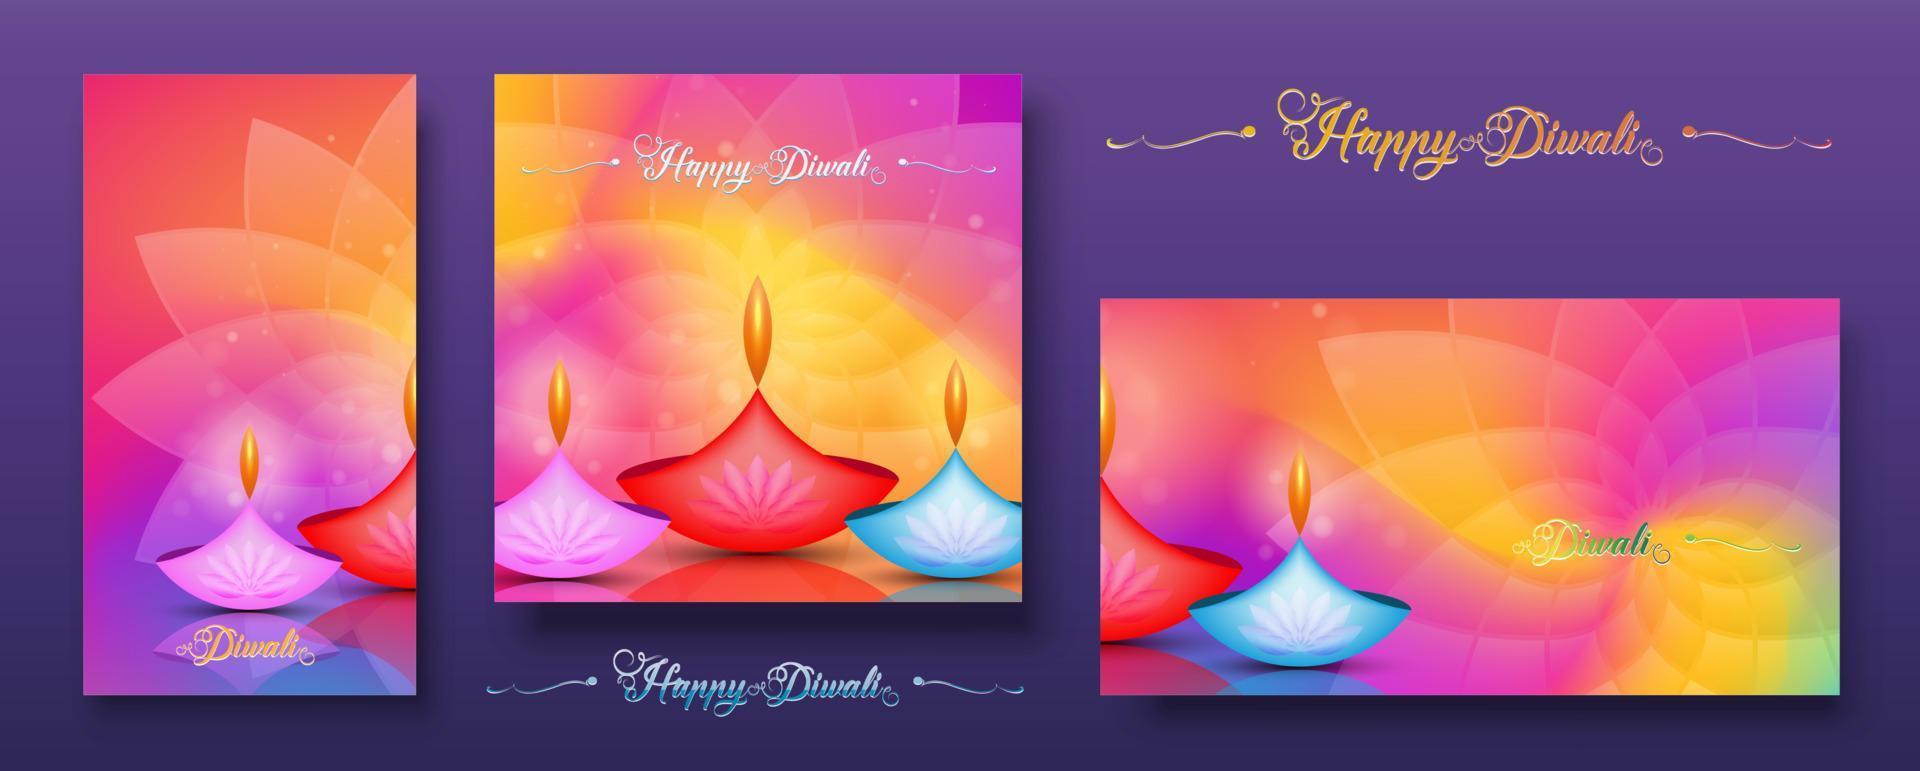 establecer una tarjeta colorida, feliz festival de luces de diwali celebración india. diseño gráfico de pancartas de lámparas de aceite diya de loto indio, diseño moderno en colores vibrantes. estilo de arte vectorial, fondo de color degradado vector